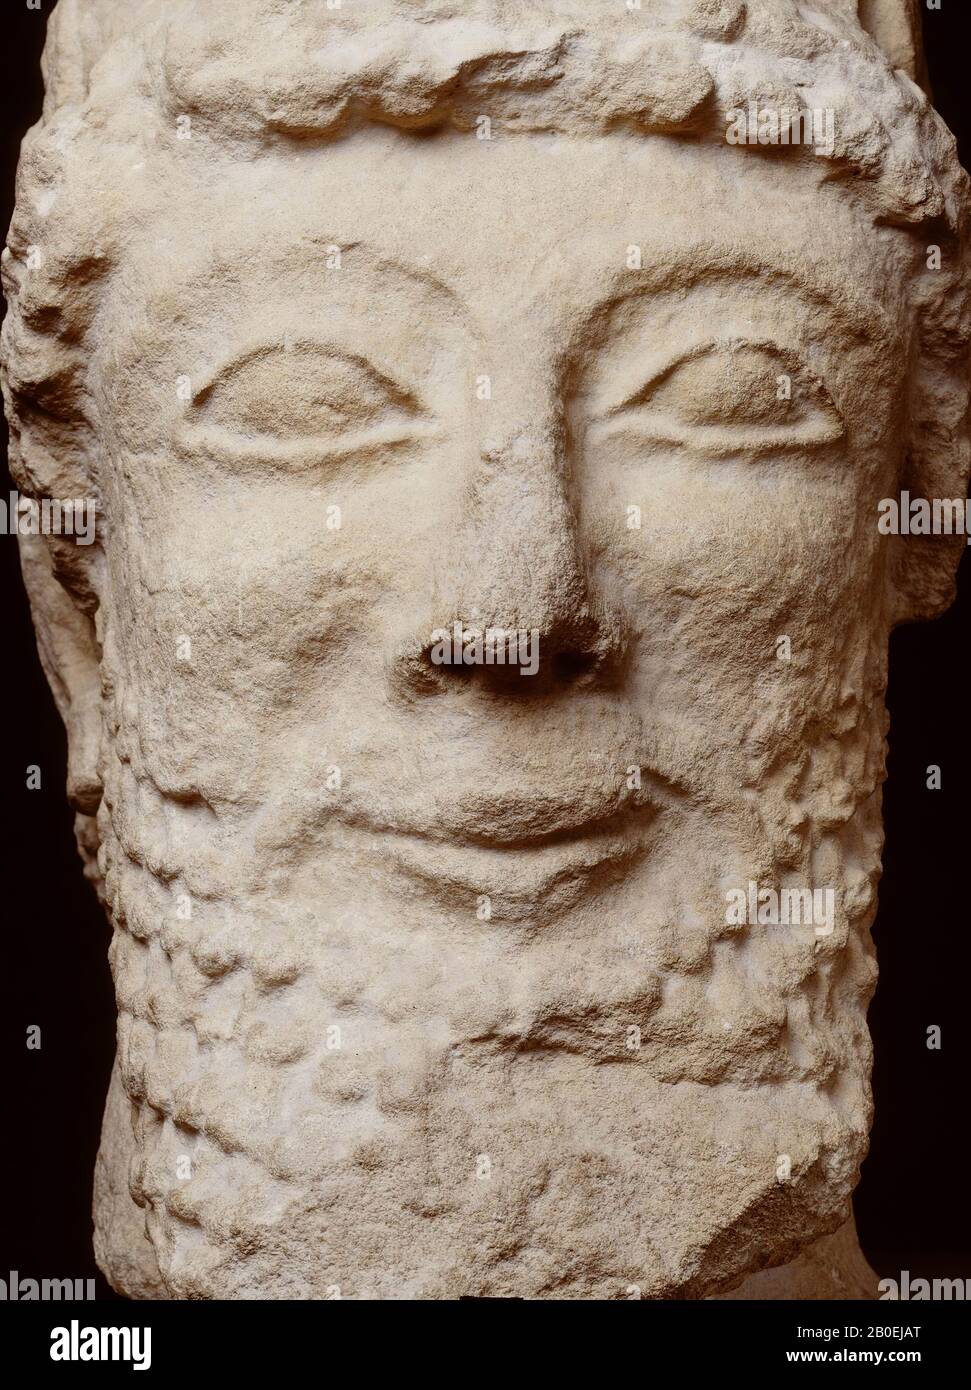 Eckiger Kopf mit einem archaischen Lächeln. Vielleicht ist der Ursprung immer noch Zypern, denn der Kopf wurde auf Zypern gekauft., Kopf, zypriotischer Männerkopf, Kalkstein, 38 cm, 40 kg, klassisch 475-460 v. Chr., unbekannt Stockfoto